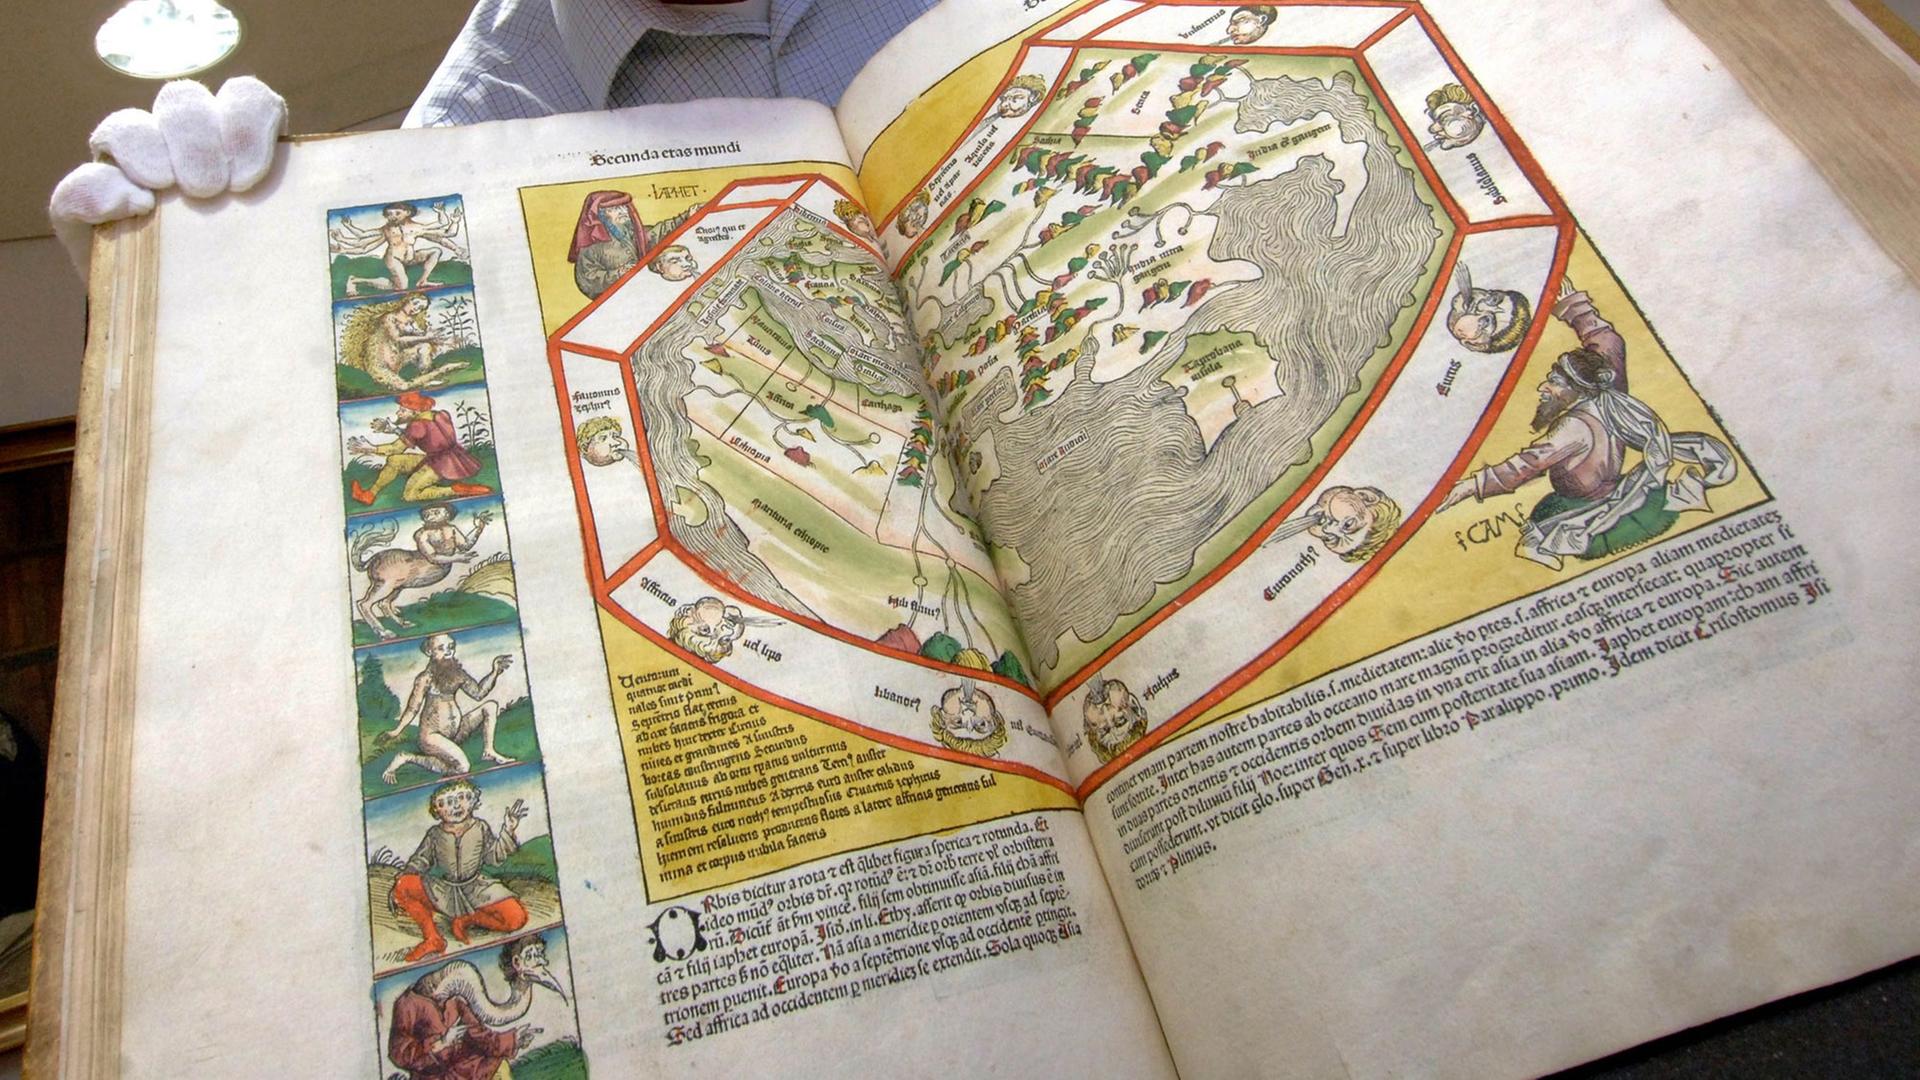 Der Leiter der Abteilung Handschriften und Sondersammlungen an der Thüringer Universitäts- und Landesbibliothek in Jena, Joachim Ott, zeigt die "Weltchronik" von Hartmann Schedel aus dem Jahr 1493.